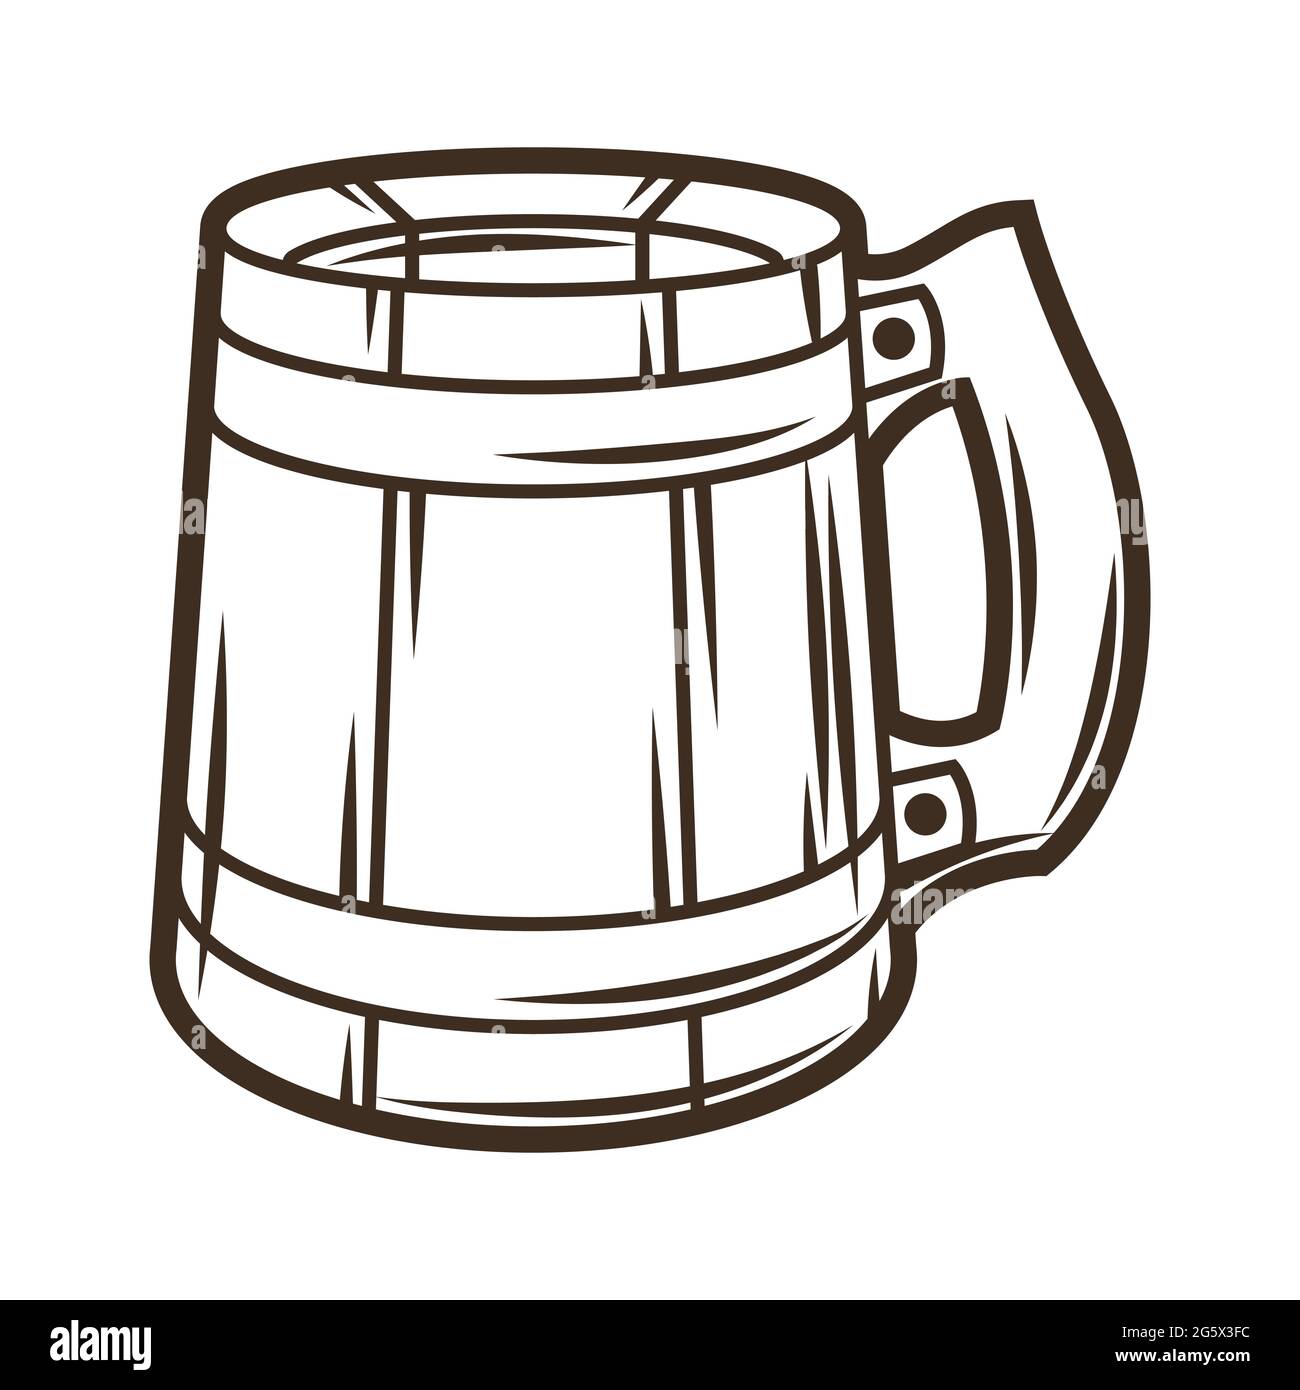 Illustrazione della tazza di legno con la birra. Oggetto in incisione stile disegnato a mano. Vecchio elemento per il festival della birra o l'Oktoberfest. Illustrazione Vettoriale